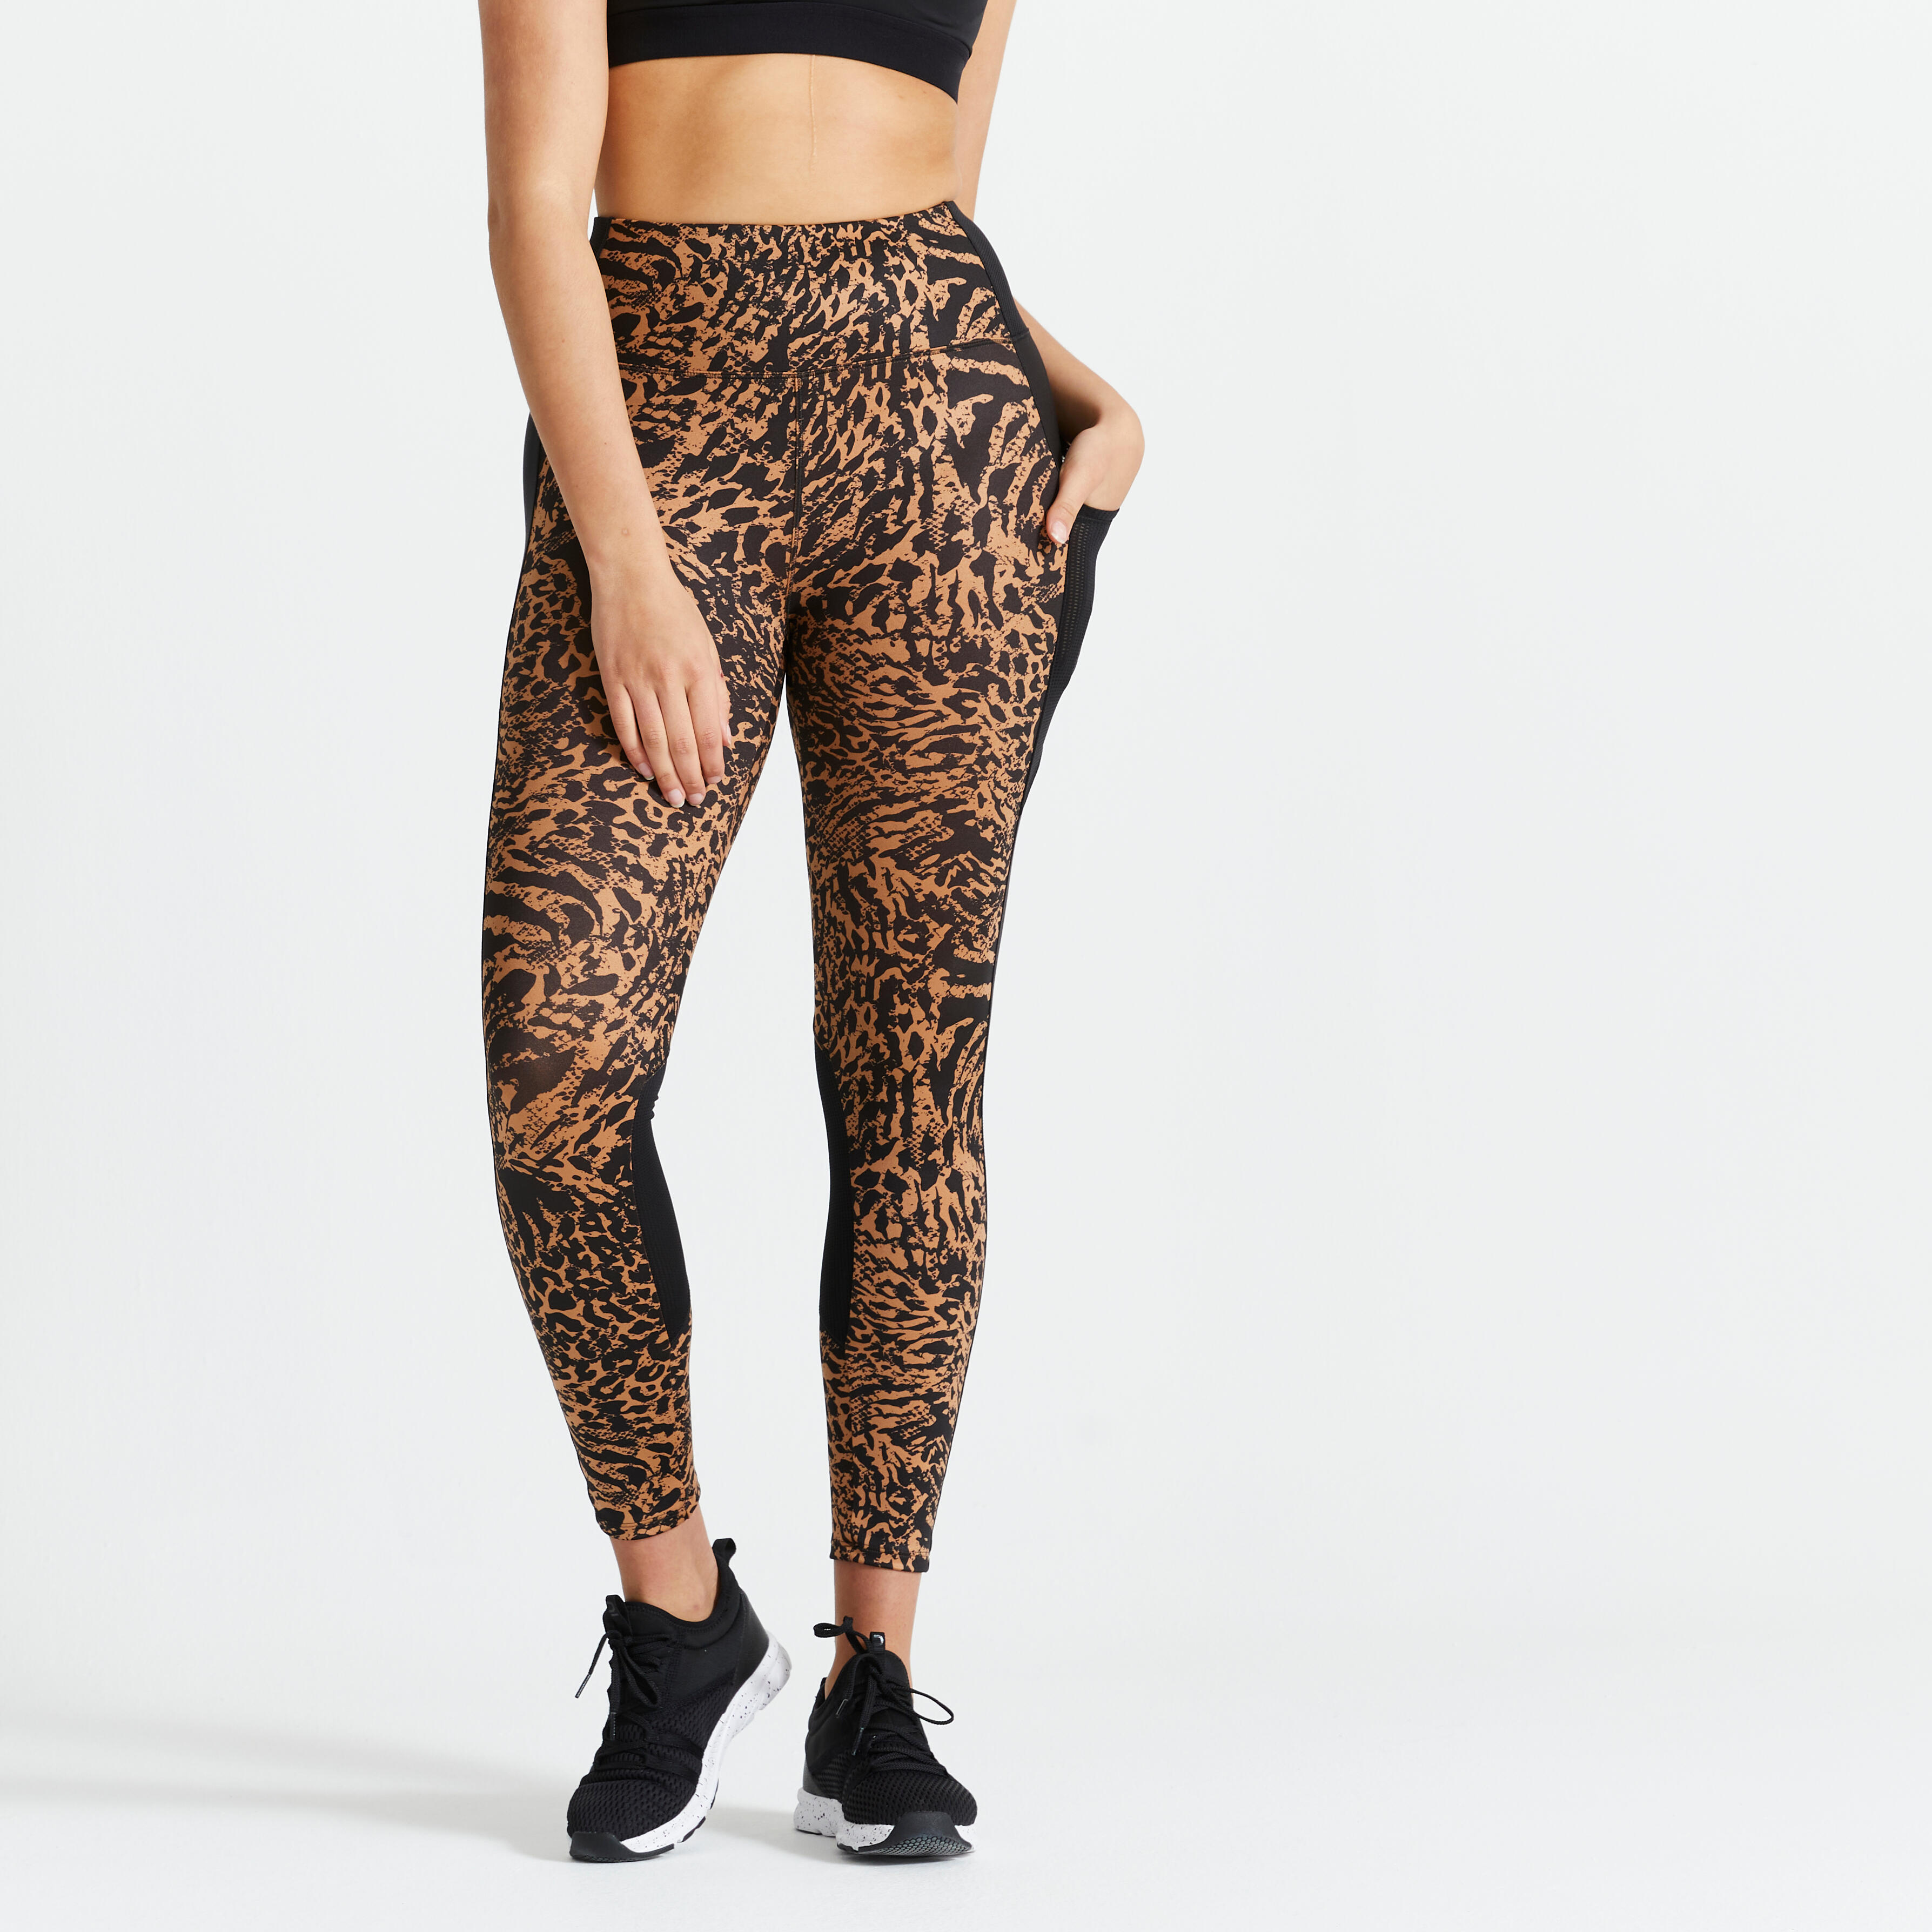 Leopard Print To Leggings - Buy Leopard Print To Leggings online in India